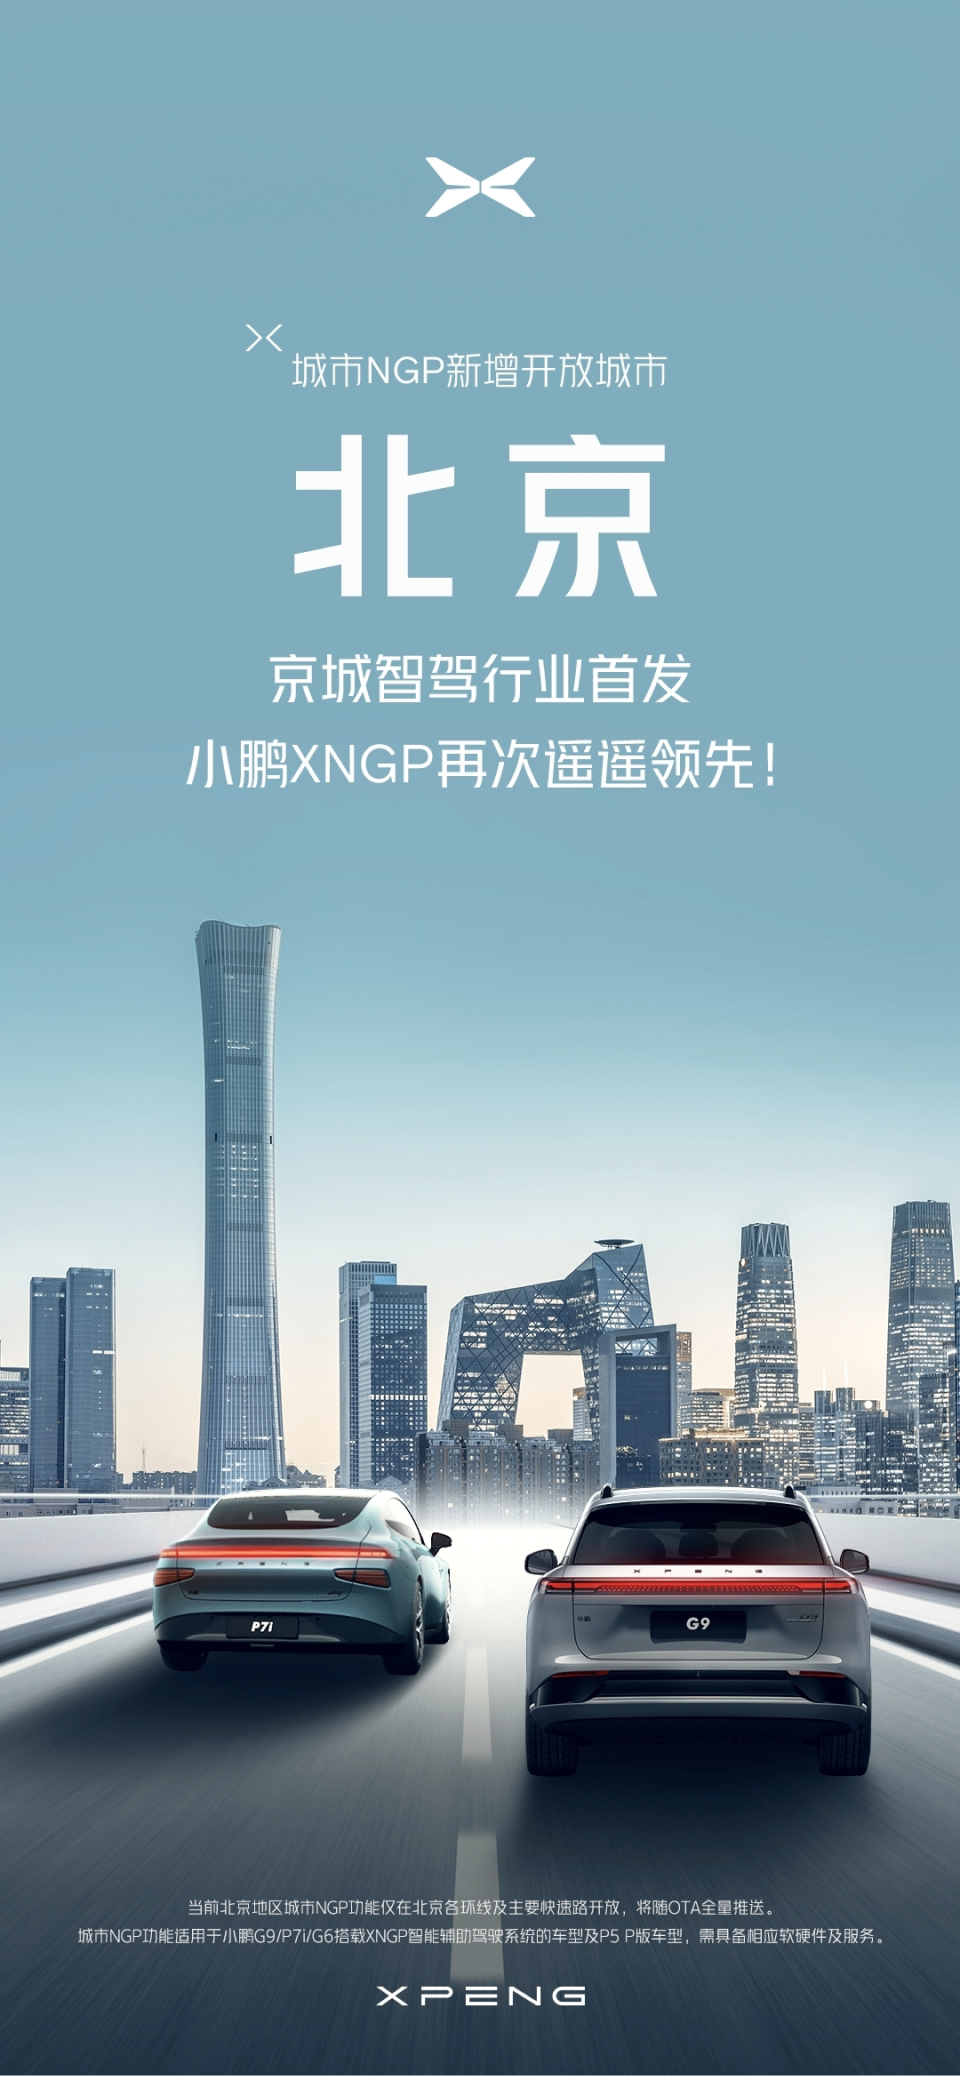 小鵬城市NGP開放北京 北京首次迎來城區高階智駕